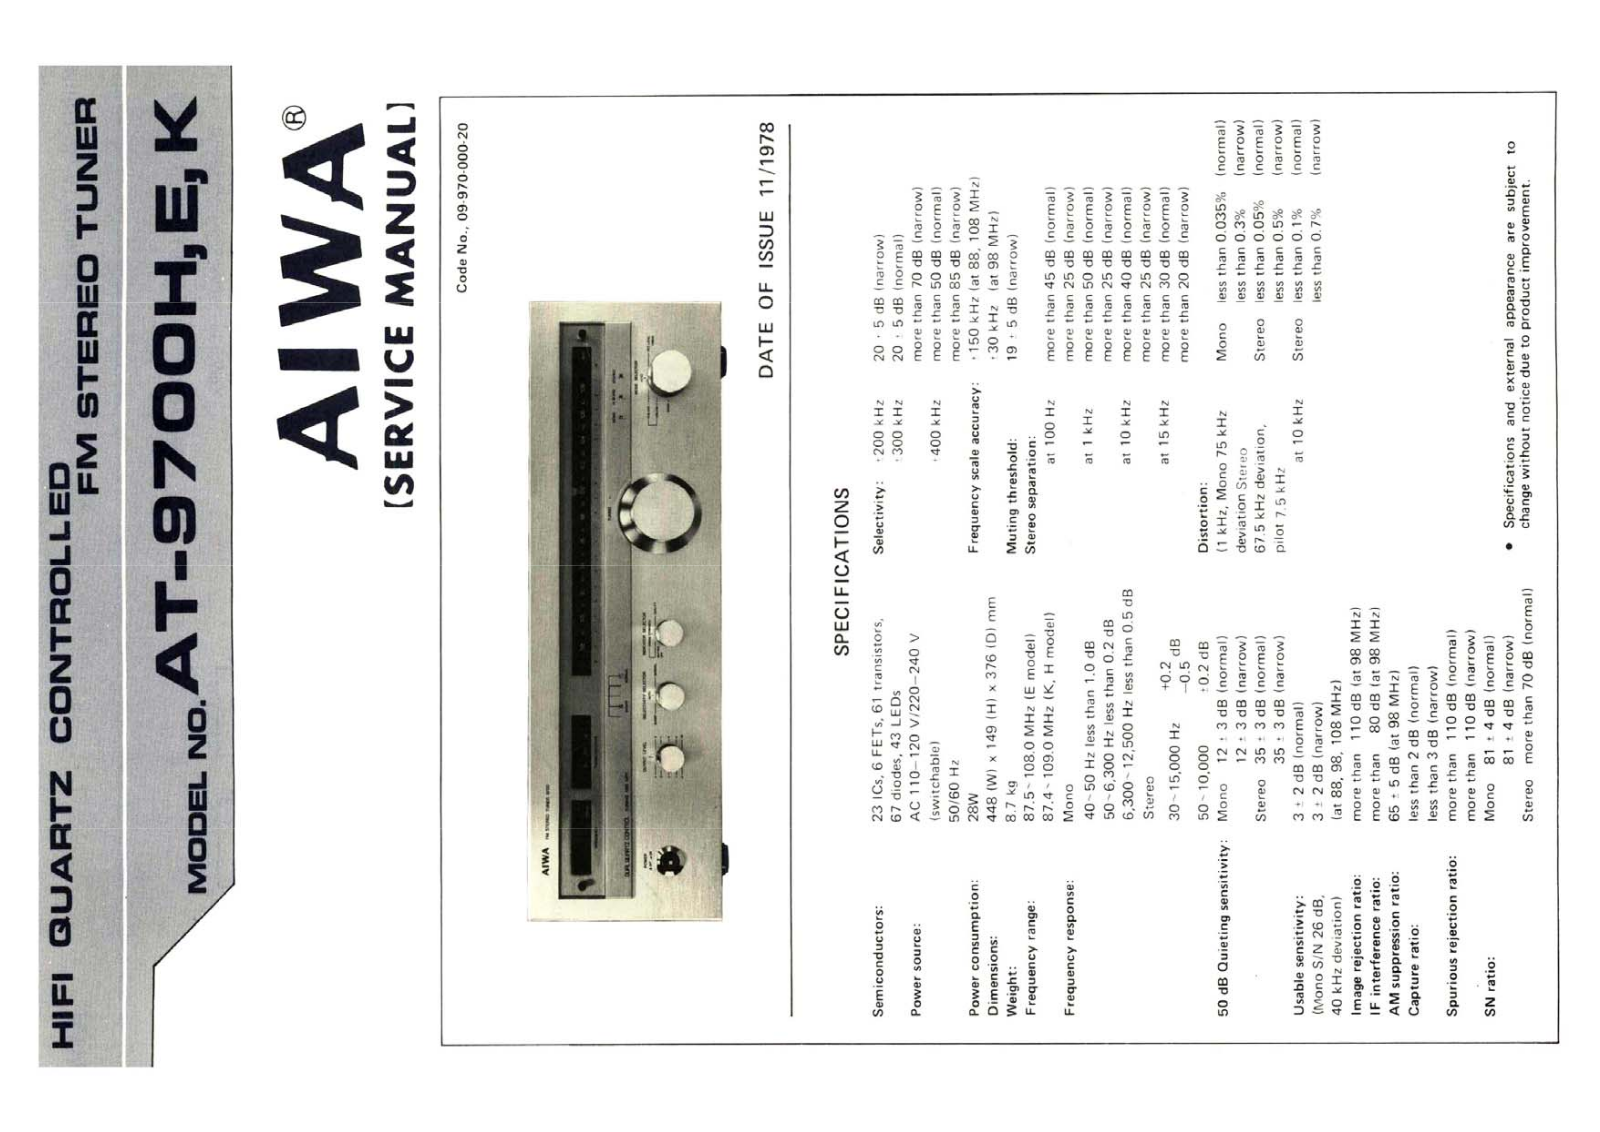 Aiwa AT-9700 Service Manual